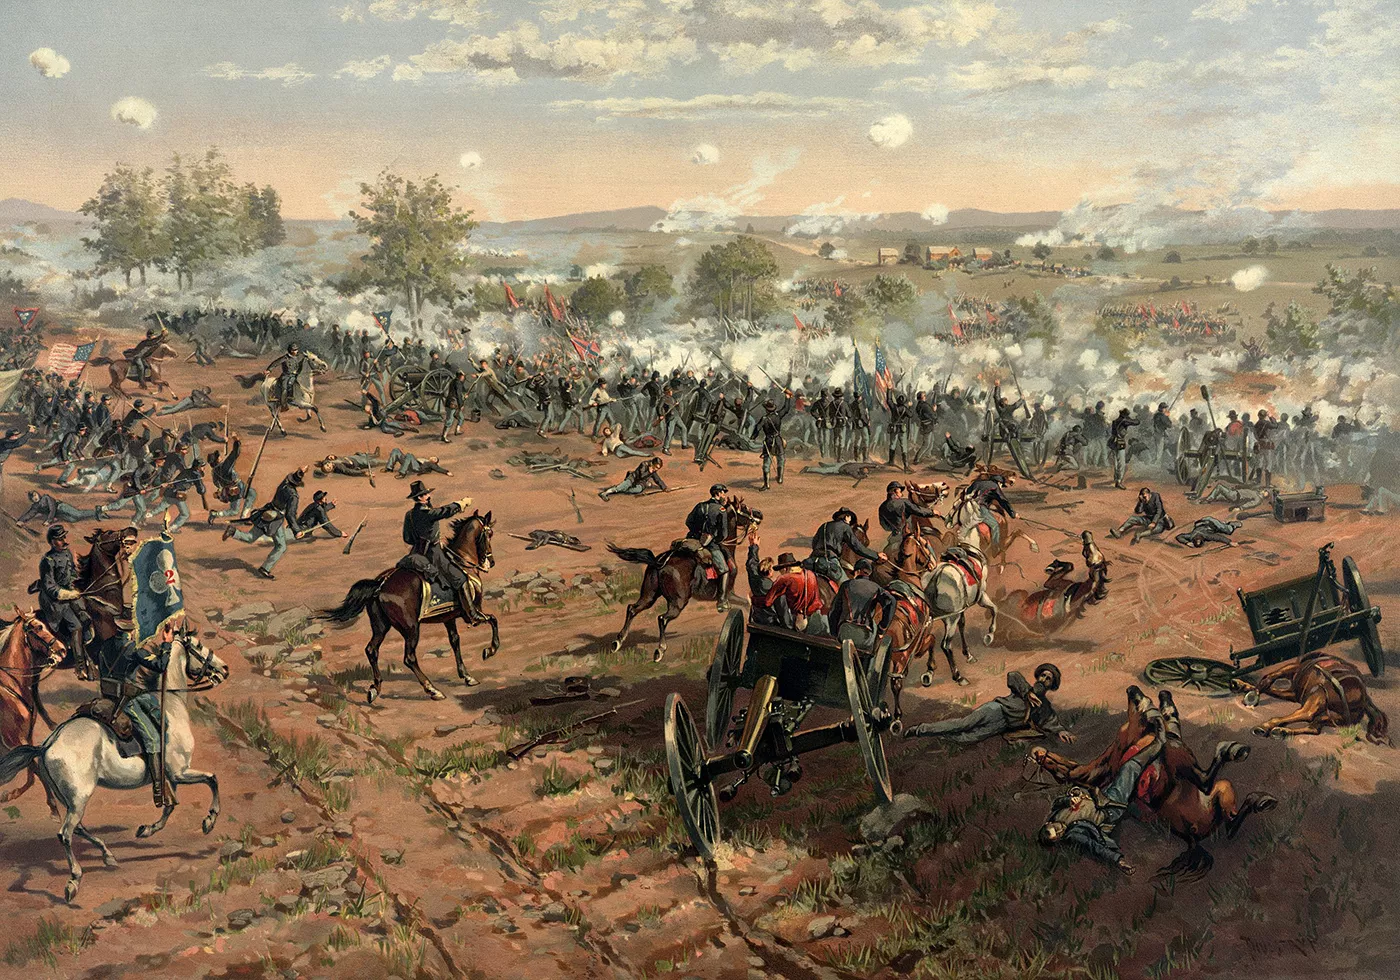 Gettysburg va ser la batalla més sagnant de la guerra, amb 46.000 víctimes. La retirada de les tropes confederades va afavorir l’avanç de la Unió